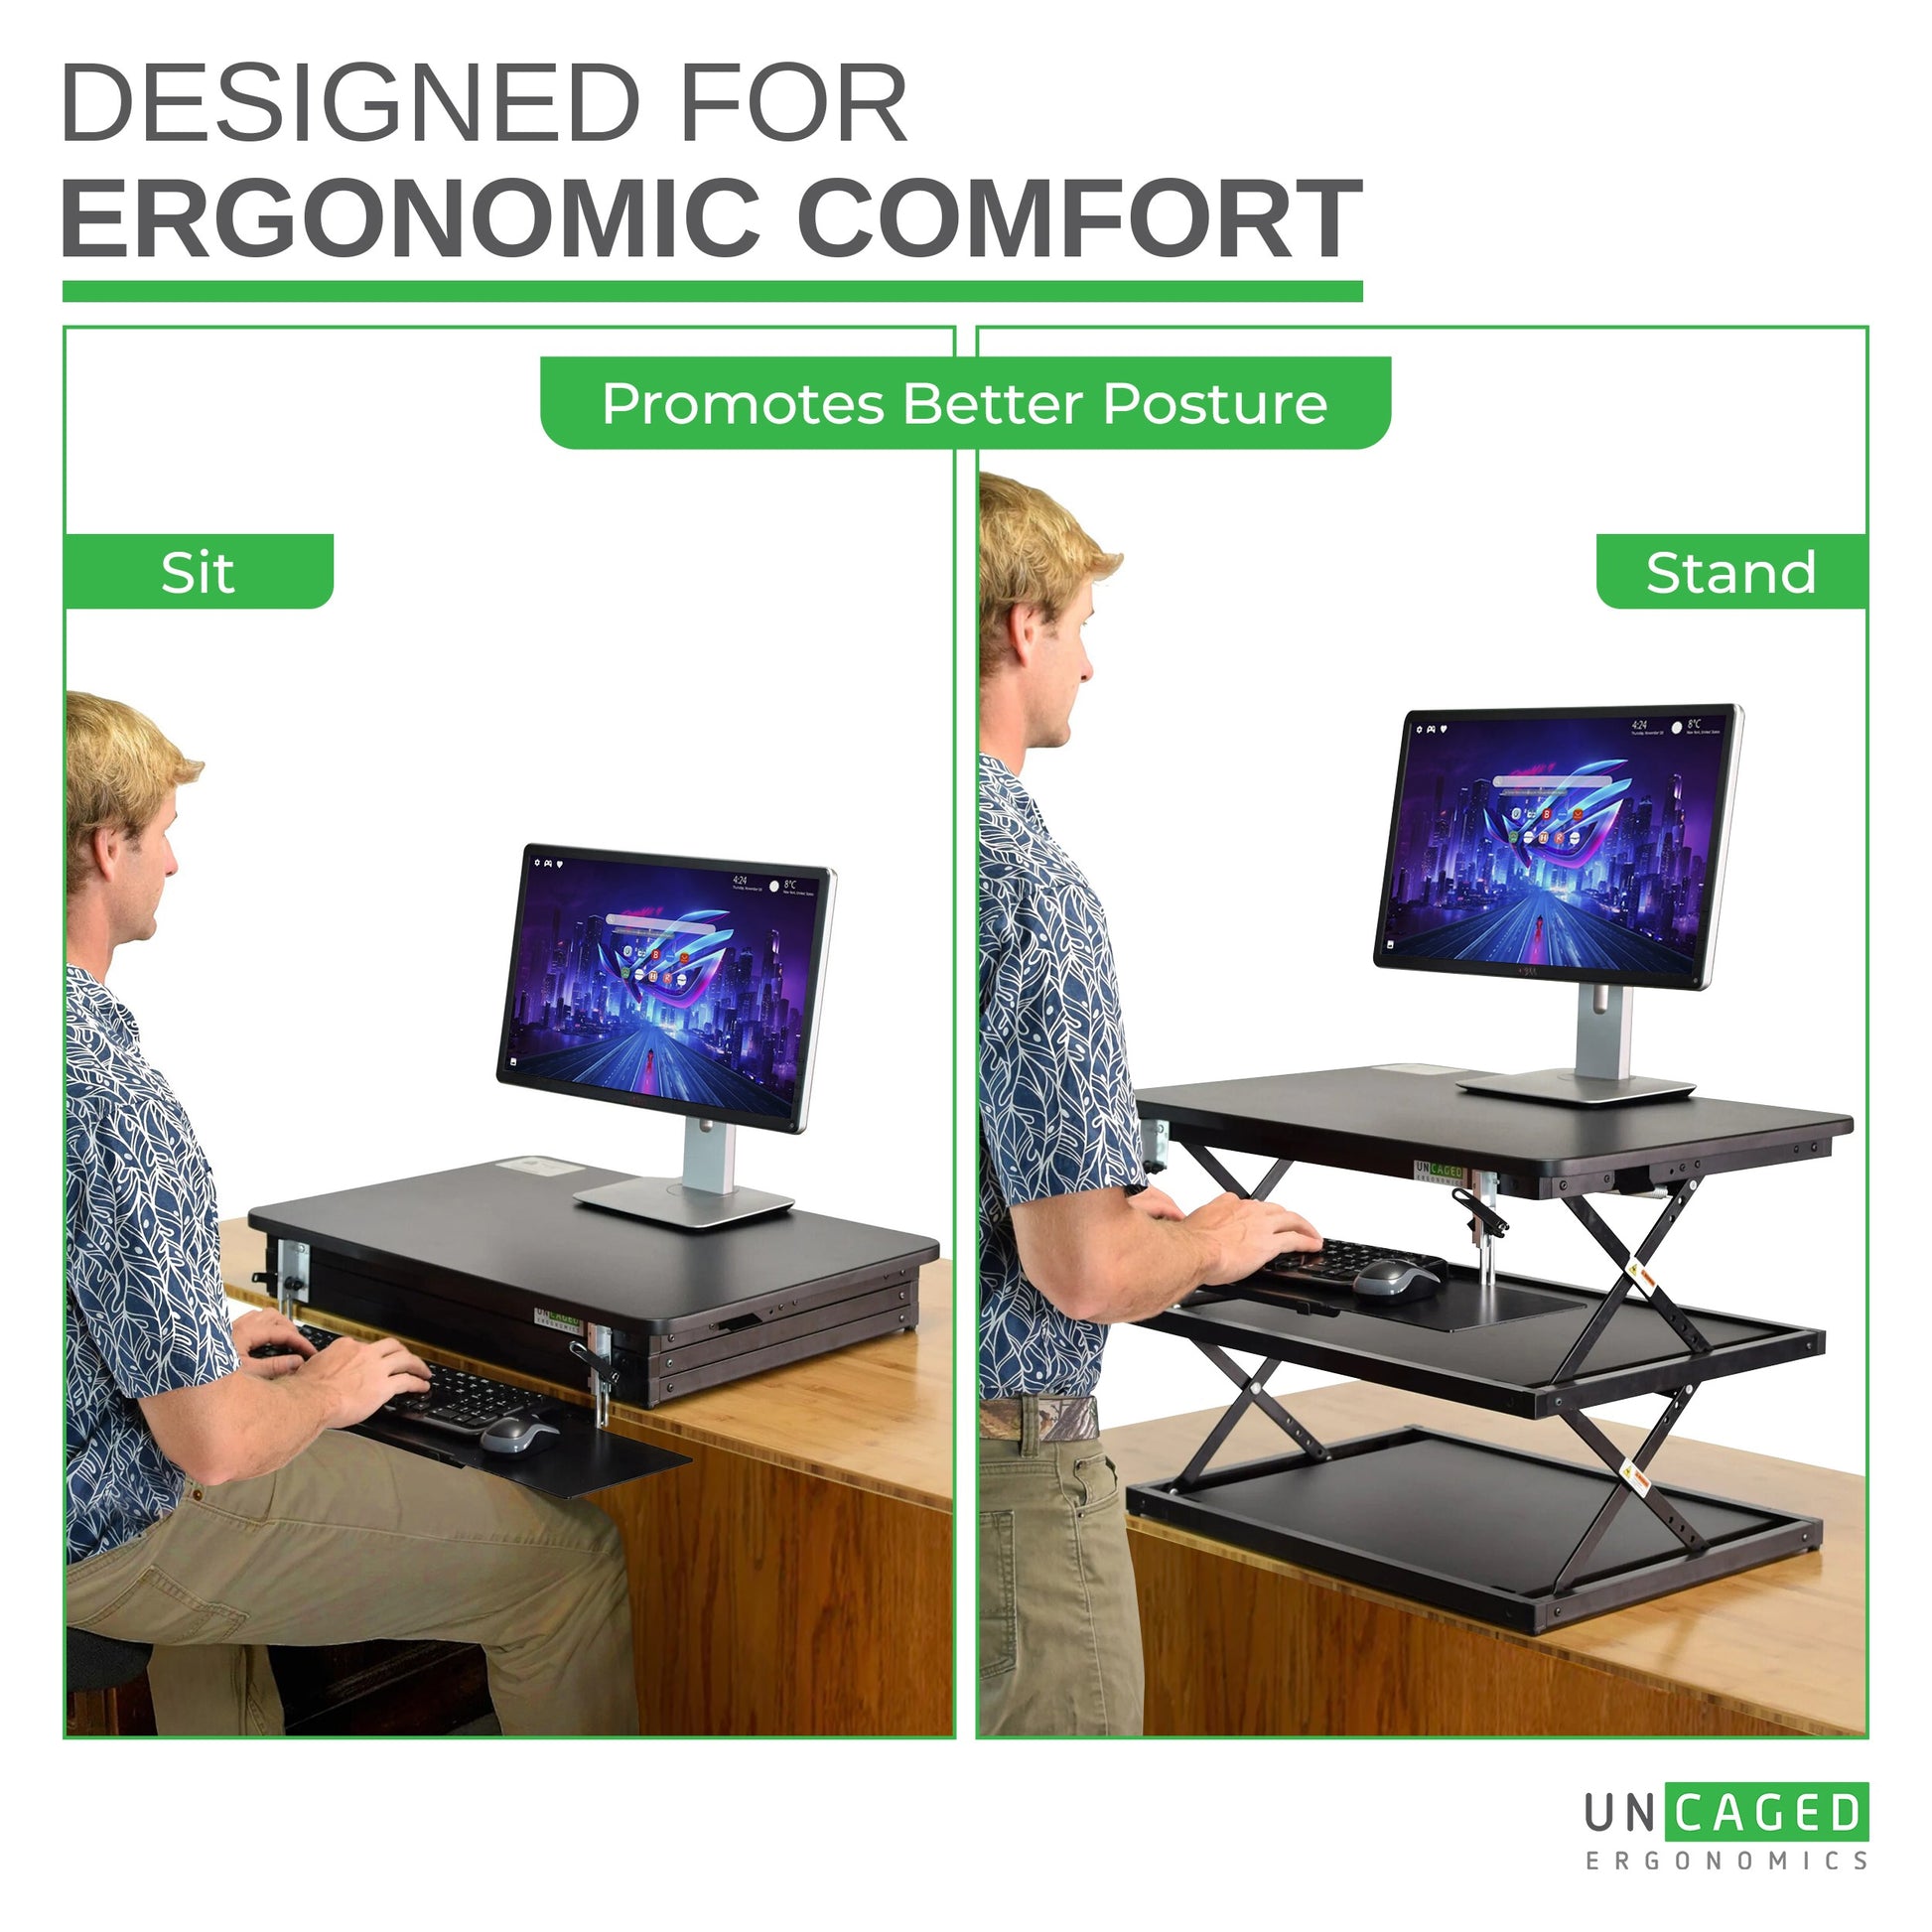 MINI small portable standing desk converter conversion riser topper cheap  stand